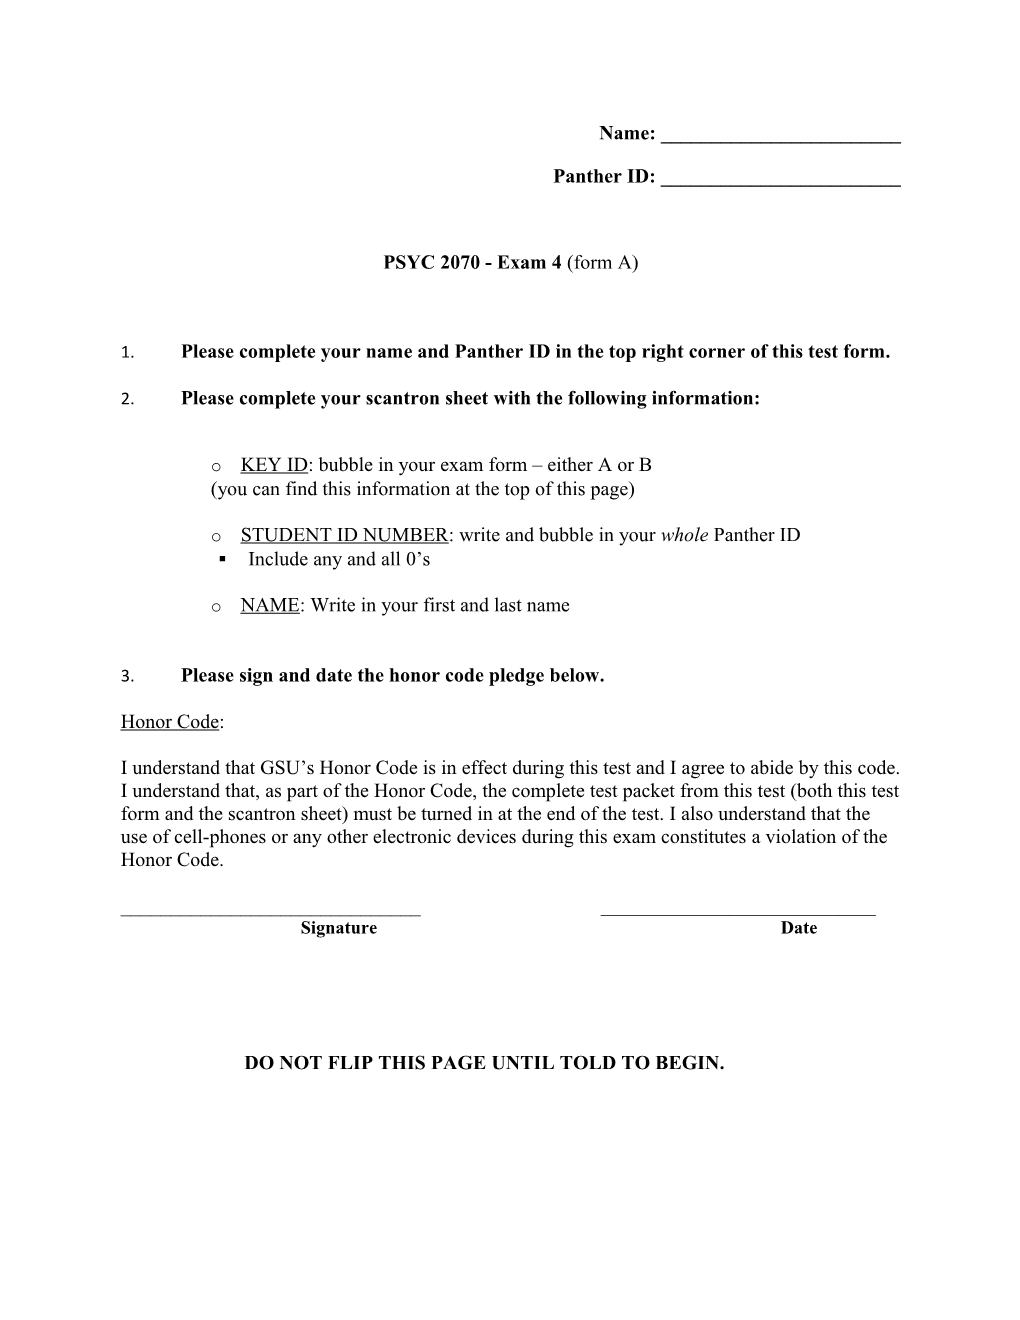 PSYC 2070 - Exam 4 (Form A)